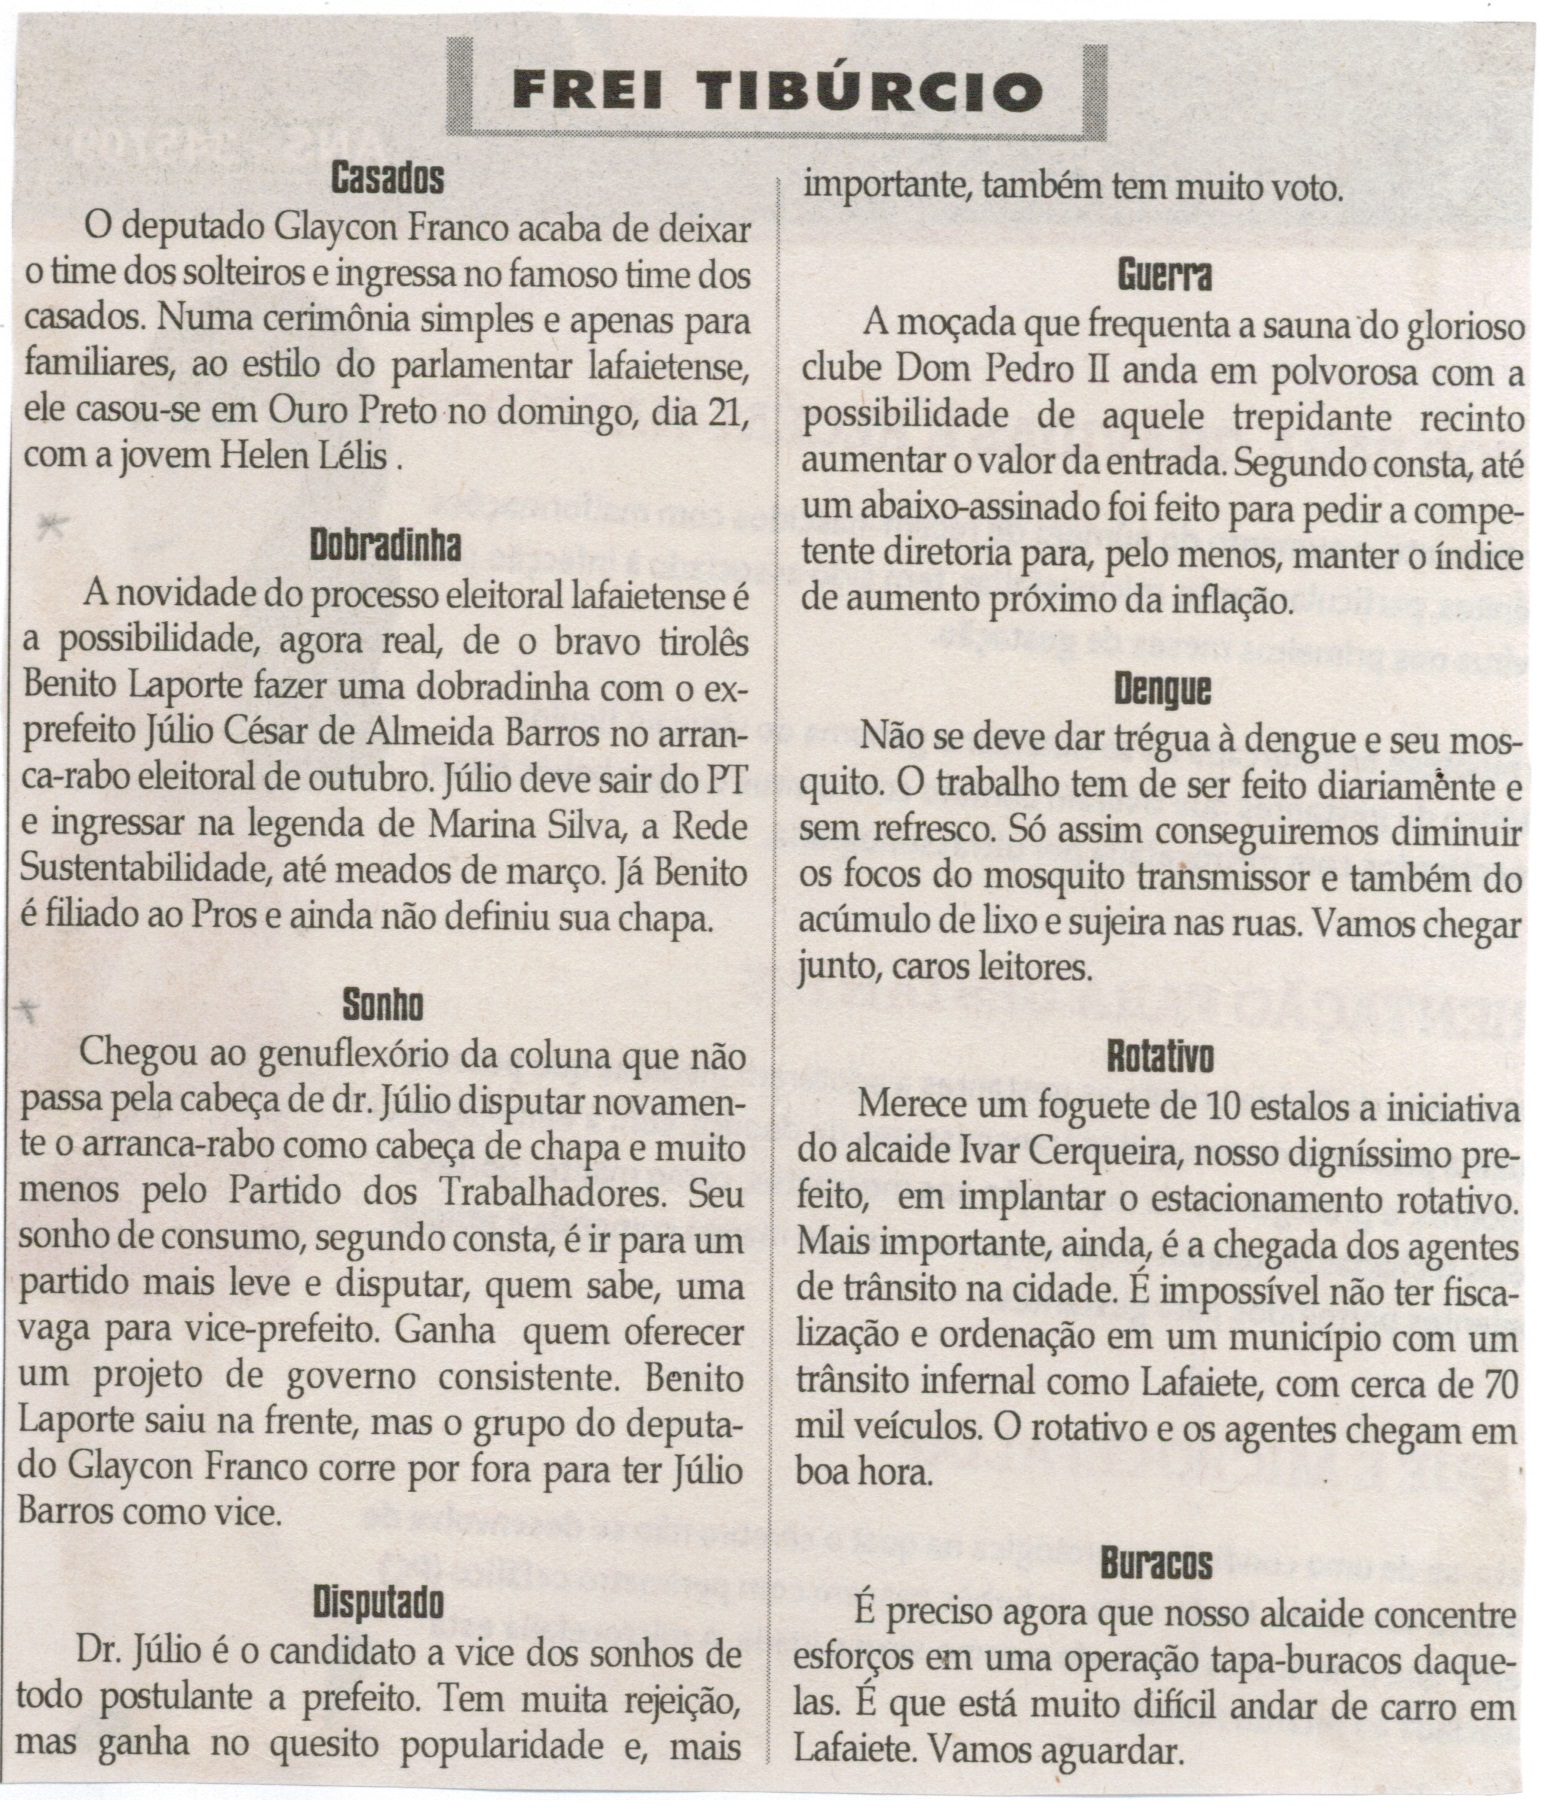  Dobradinha; Sonho. Jornal Correio da Cidade, Conselheiro Lafaiete,  27 fev. 2016, 1306ª ed. Caderno Opinião, Frei Tibúrcio, p. 8.